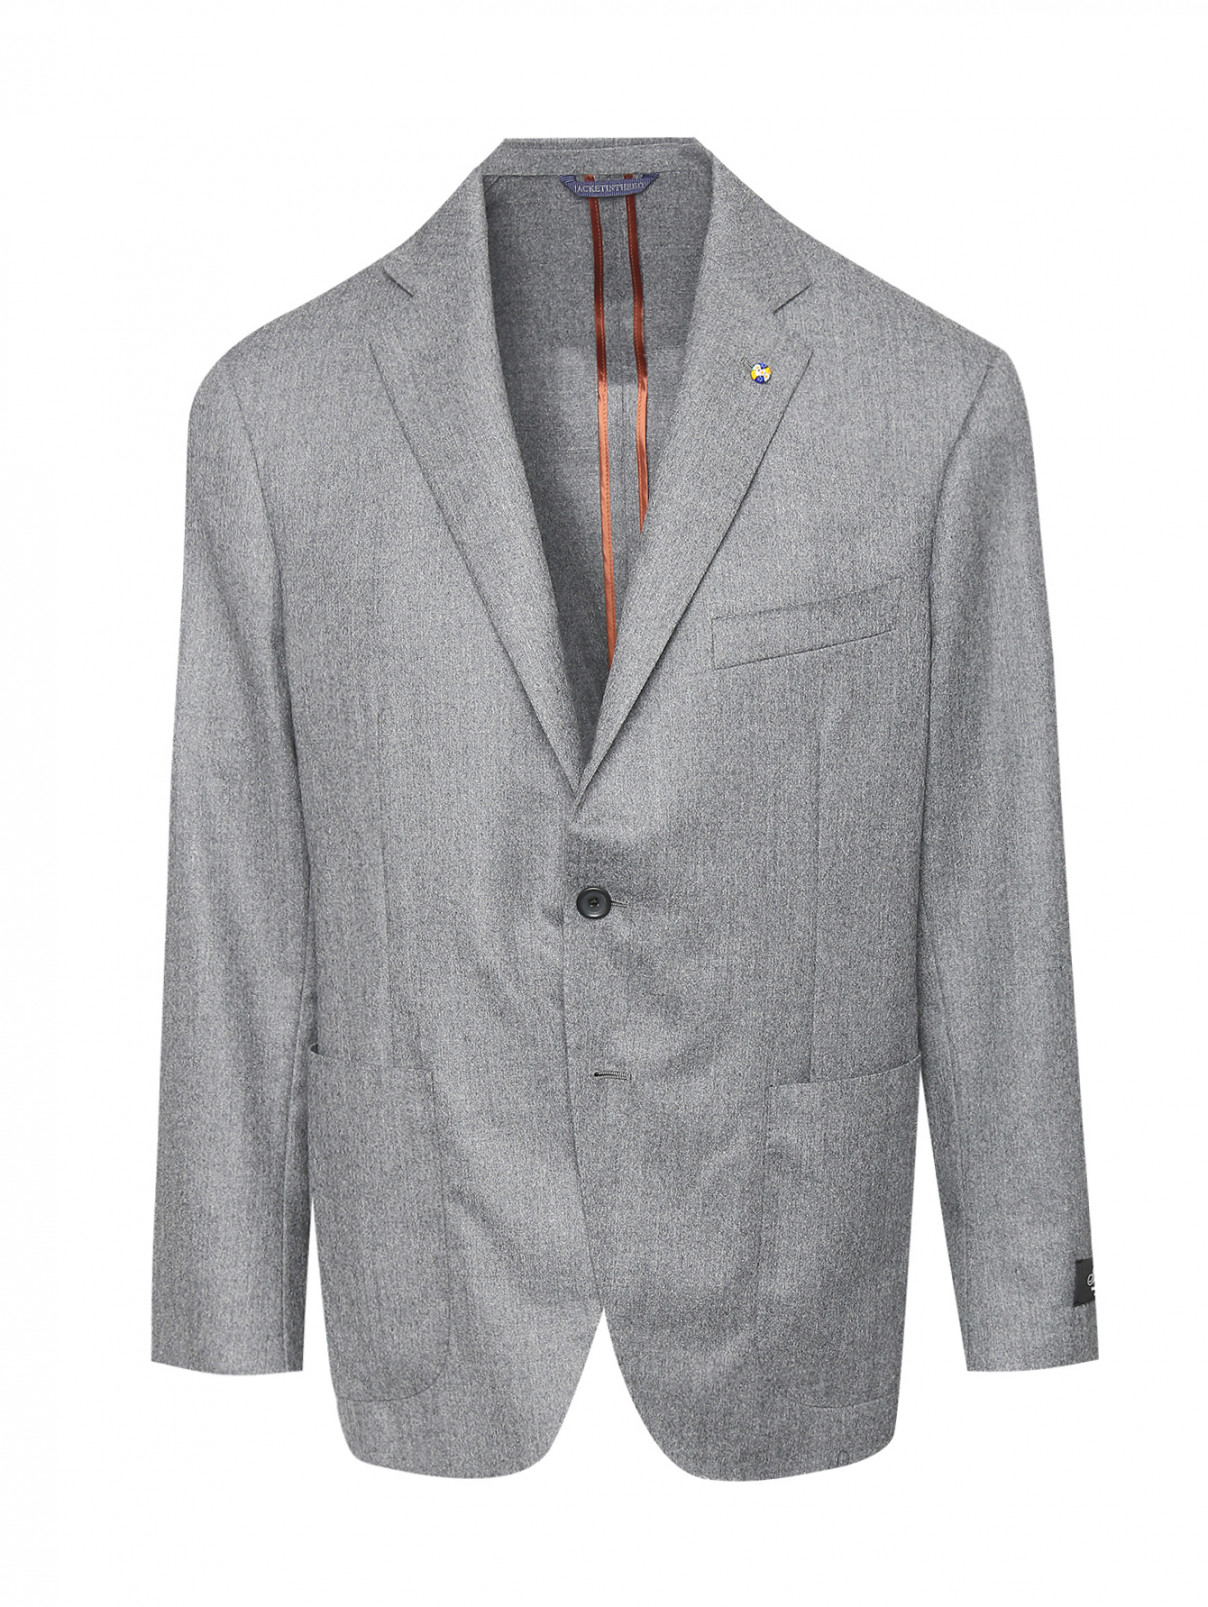 Пиджак из шерсти на пуговицах Belvest  –  Общий вид  – Цвет:  Серый